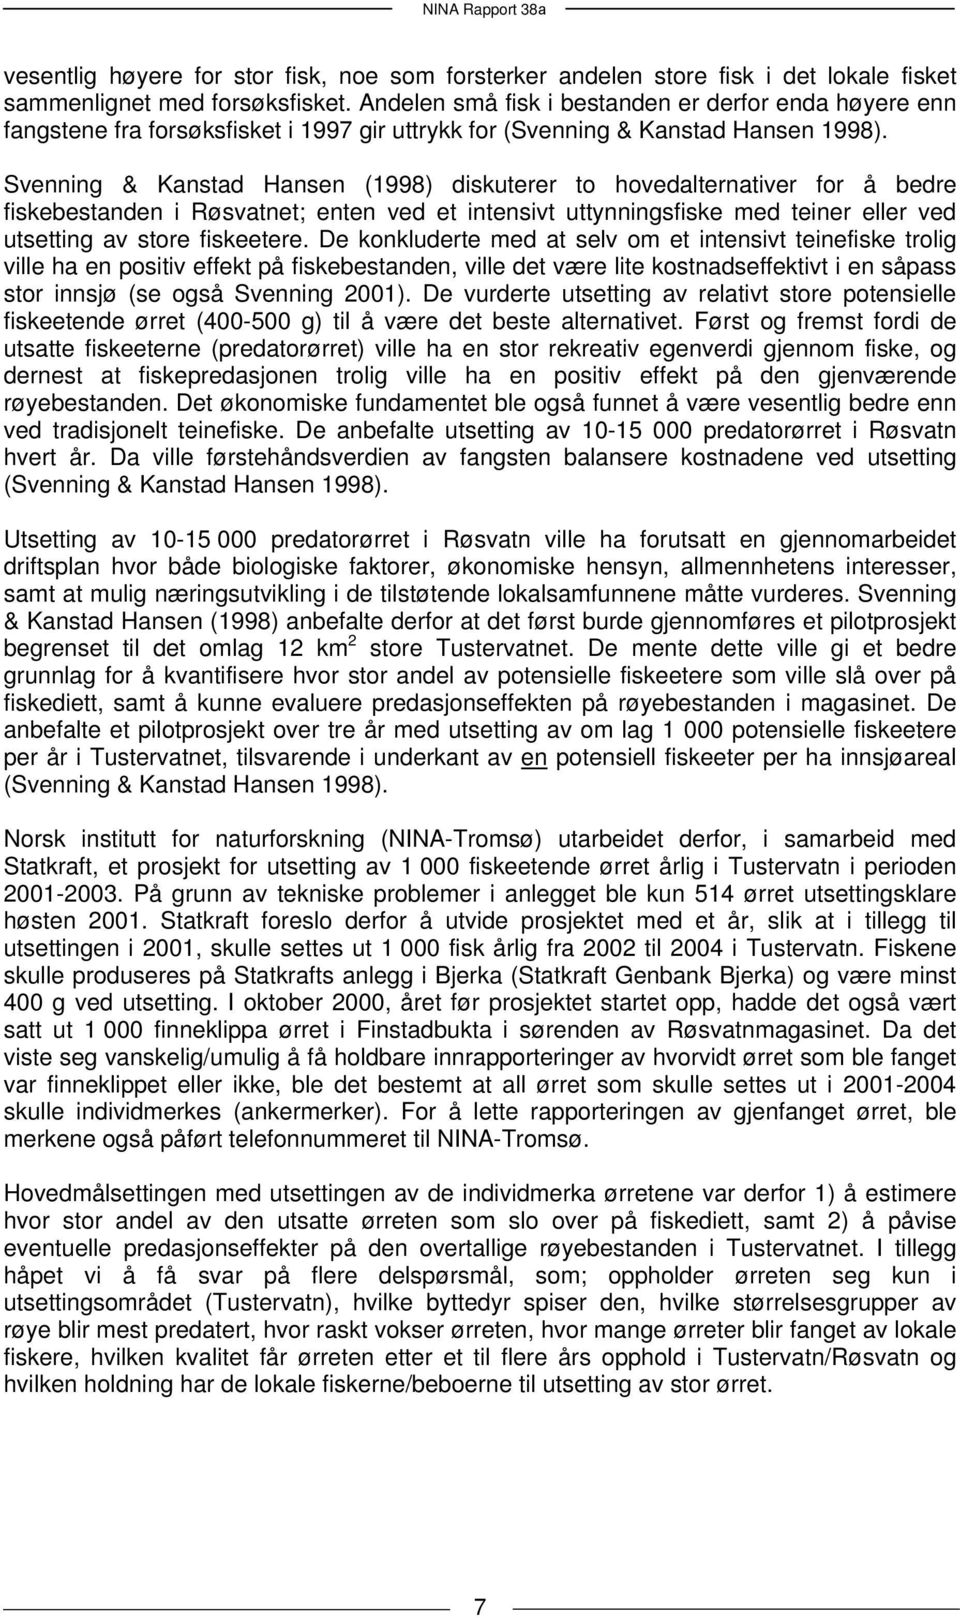 Svenning & Kanstad Hansen (1998) diskuterer to hovedalternativer for å bedre fiskebestanden i Røsvatnet; enten ved et intensivt uttynningsfiske med teiner eller ved utsetting av store fiskeetere.